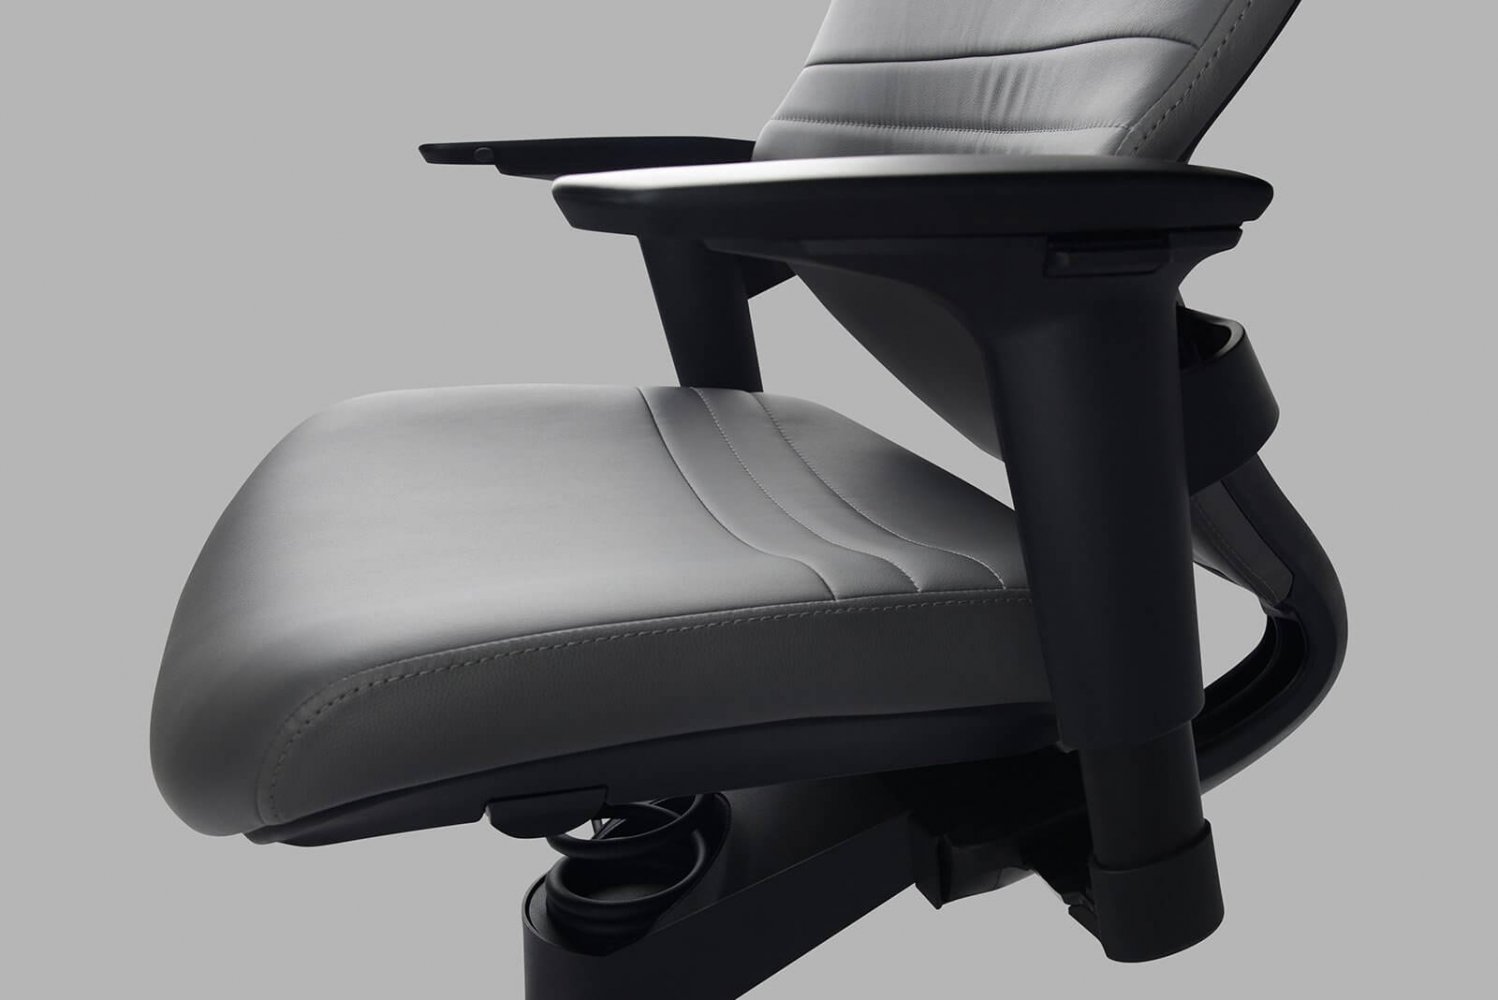 Adaptic Style kancelářská zdravotní židle